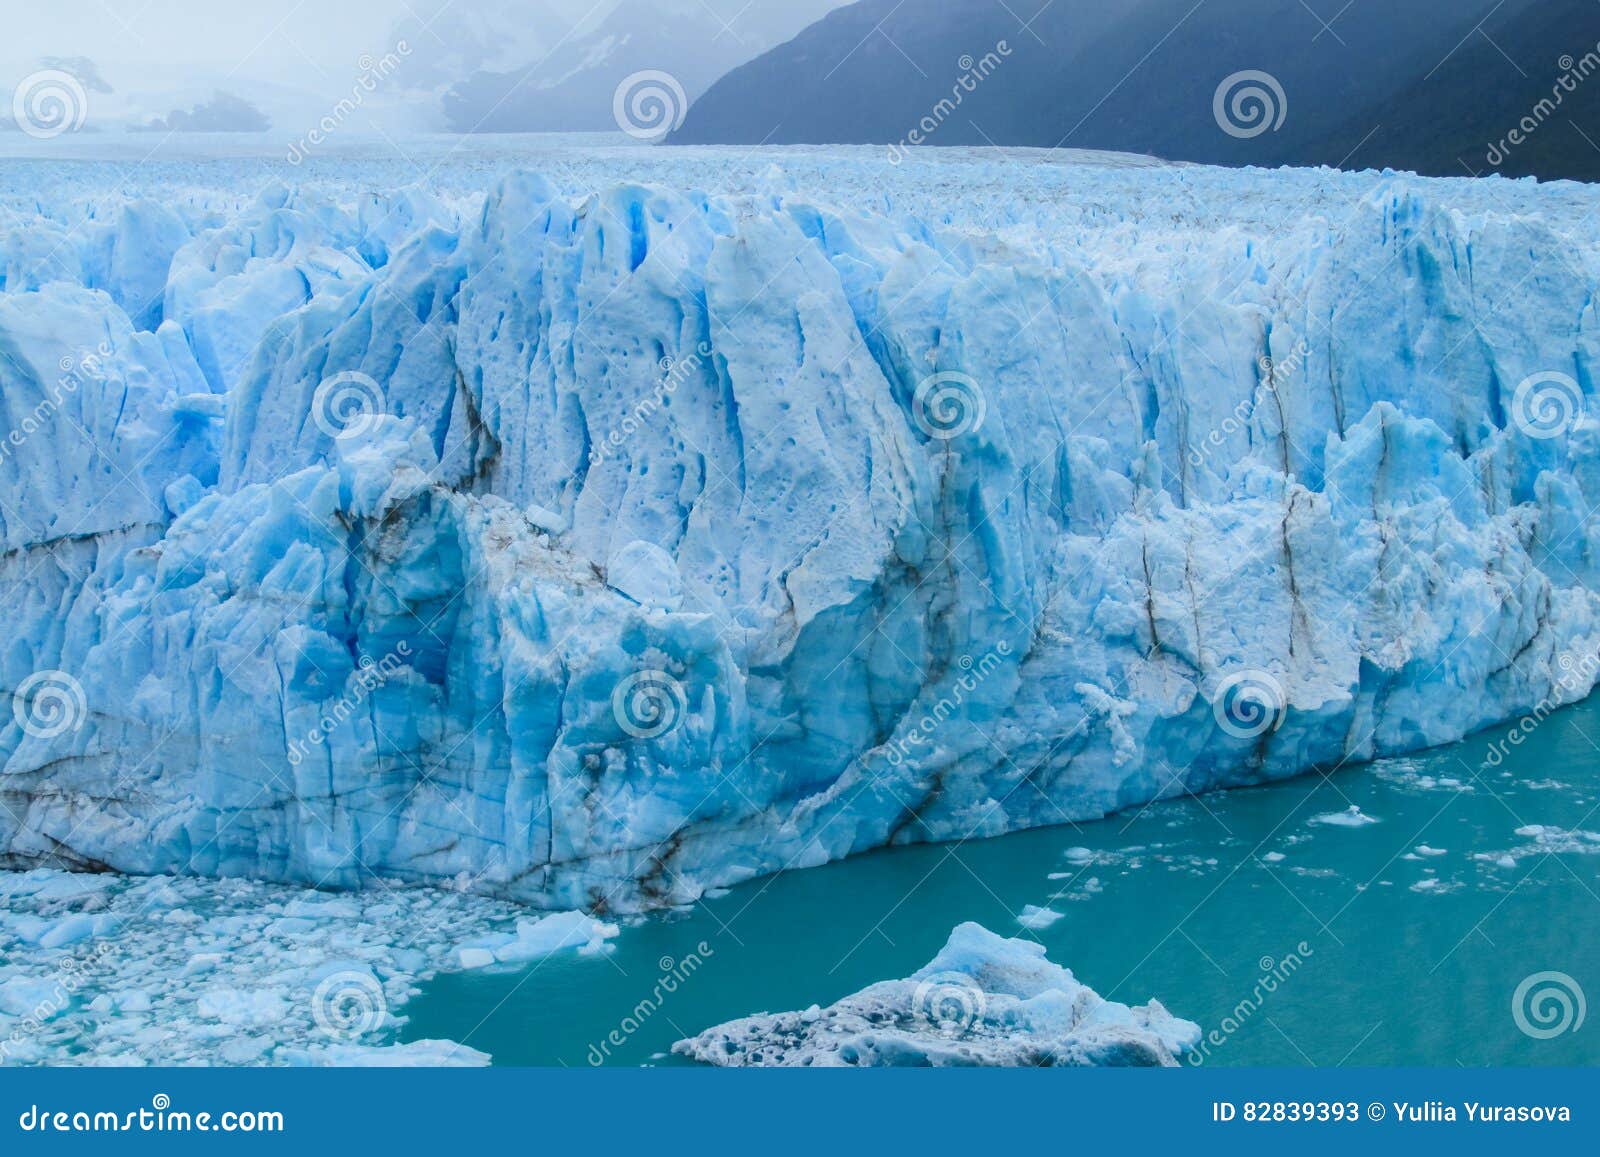 blue ice glaciar perito moreno in patagonia